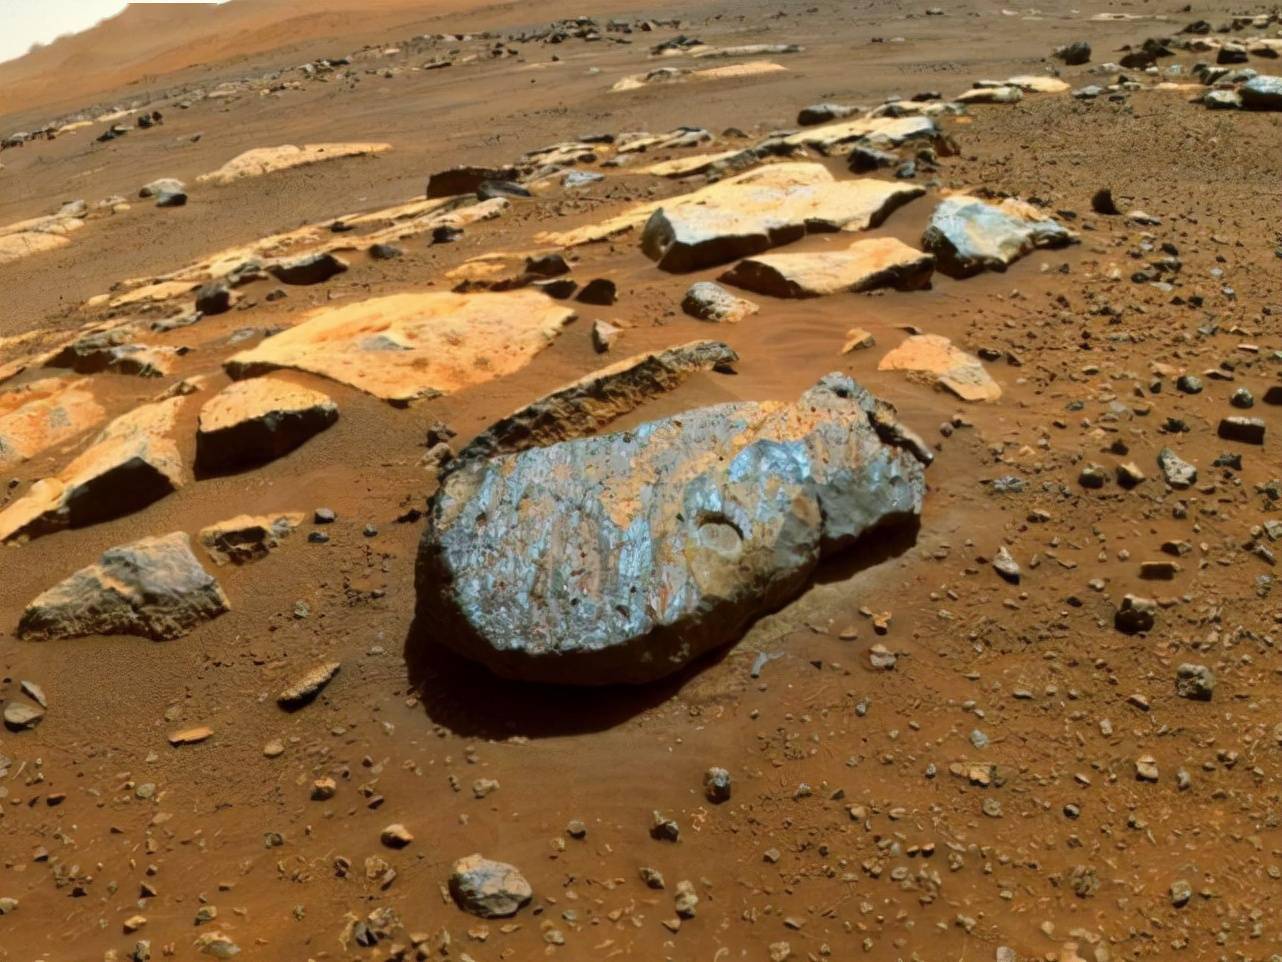 毅力号拍下真实火星照片,火星车周围岩石随处可见,毫无生机